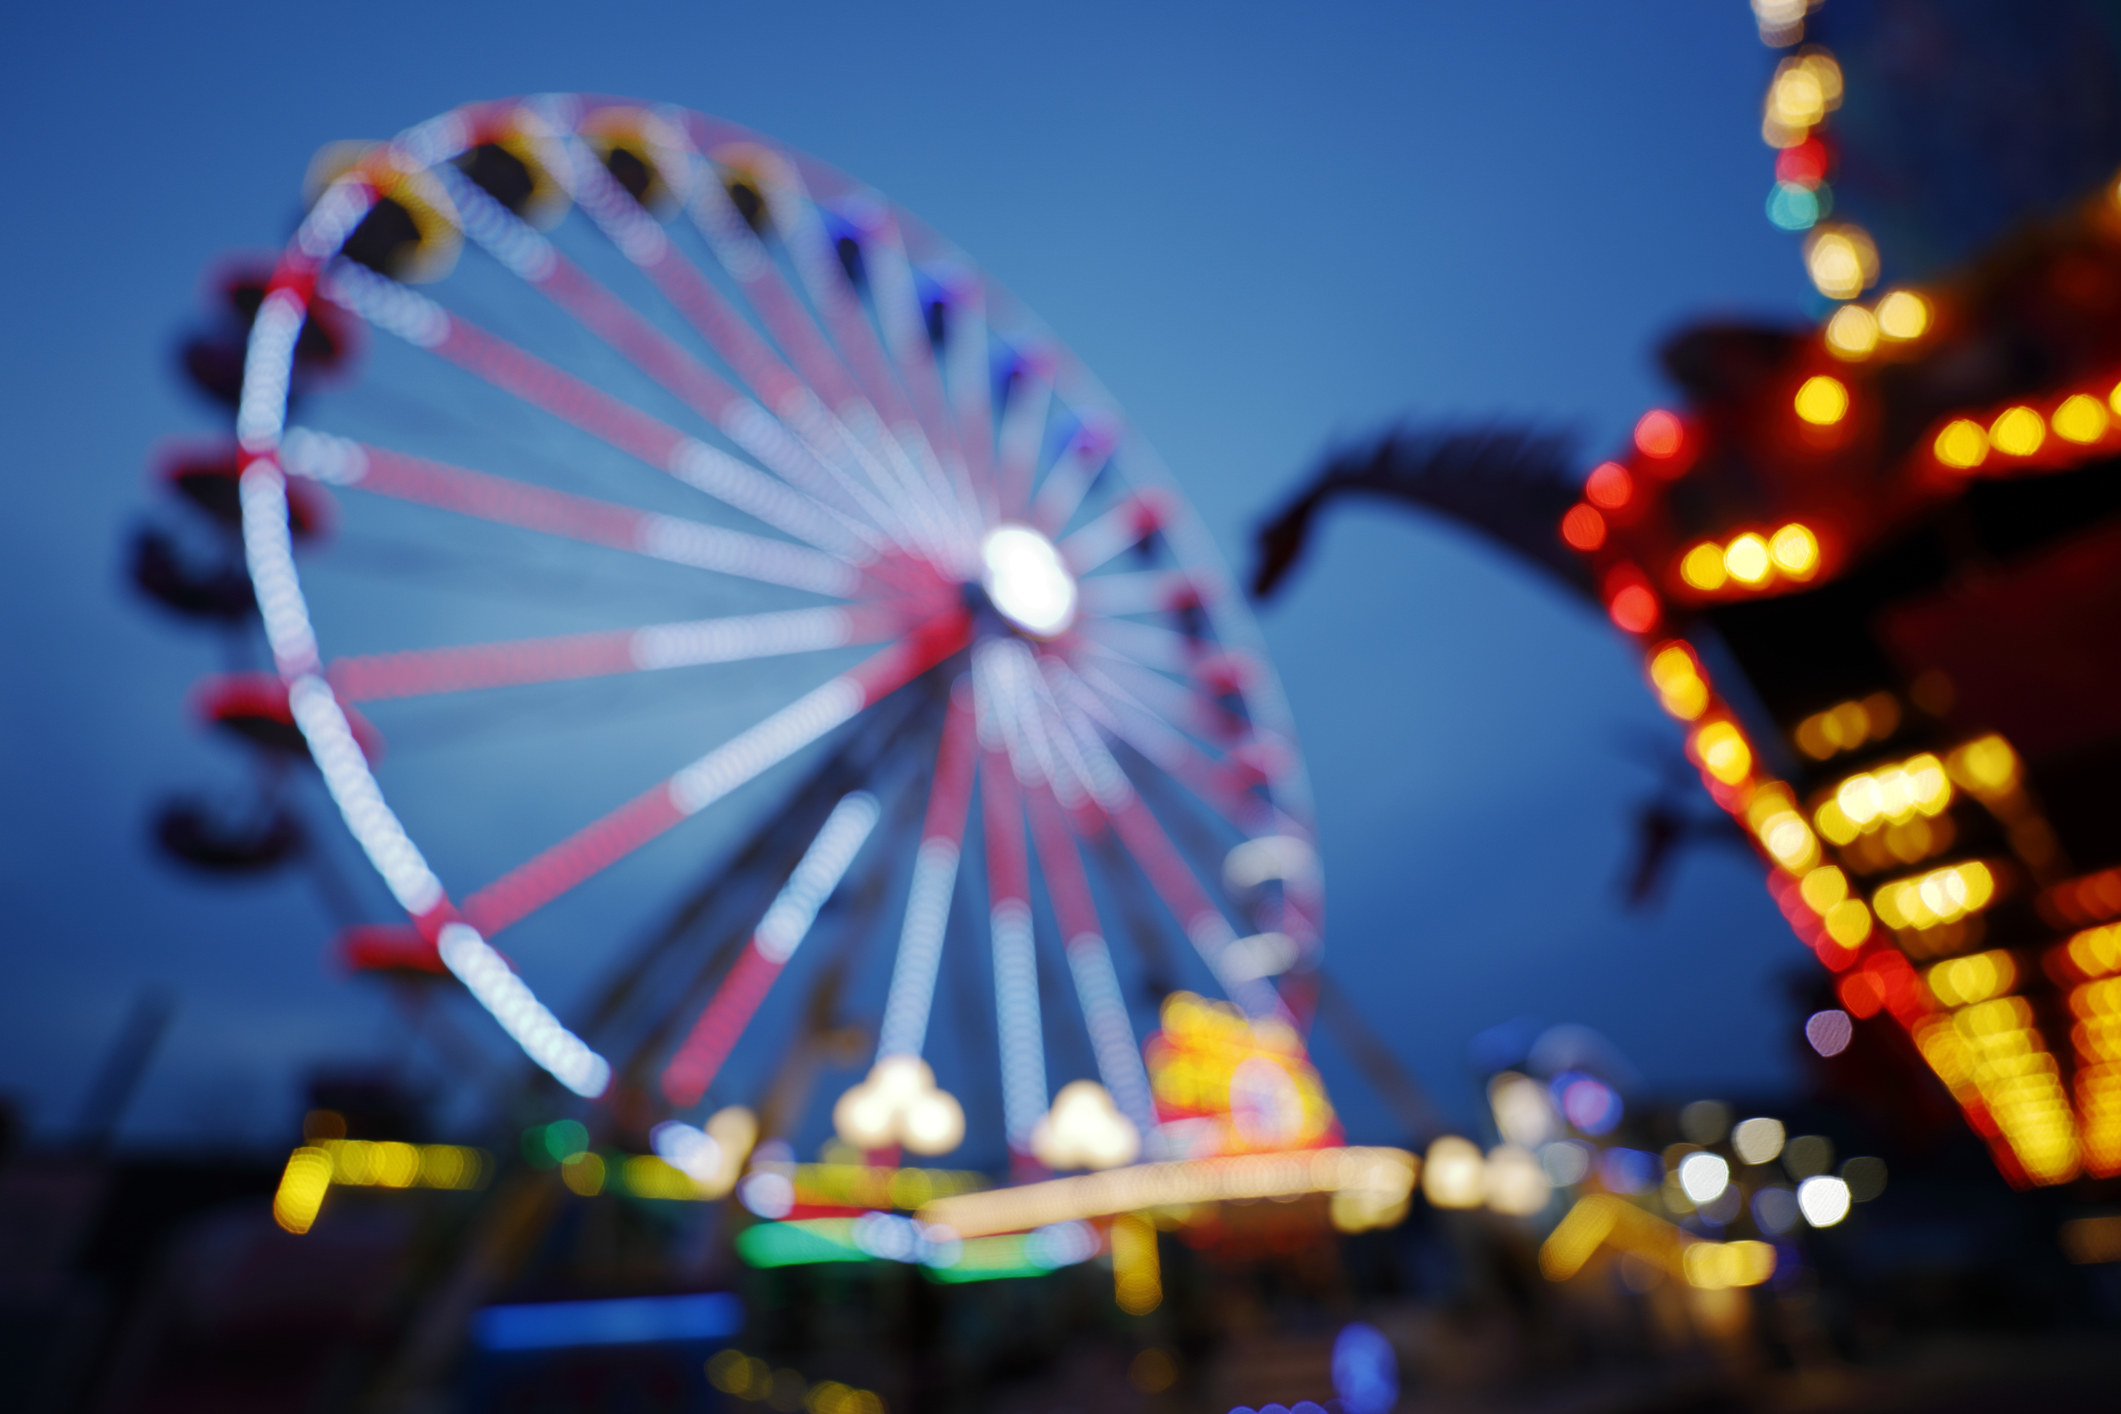 Ferris wheel at the fair